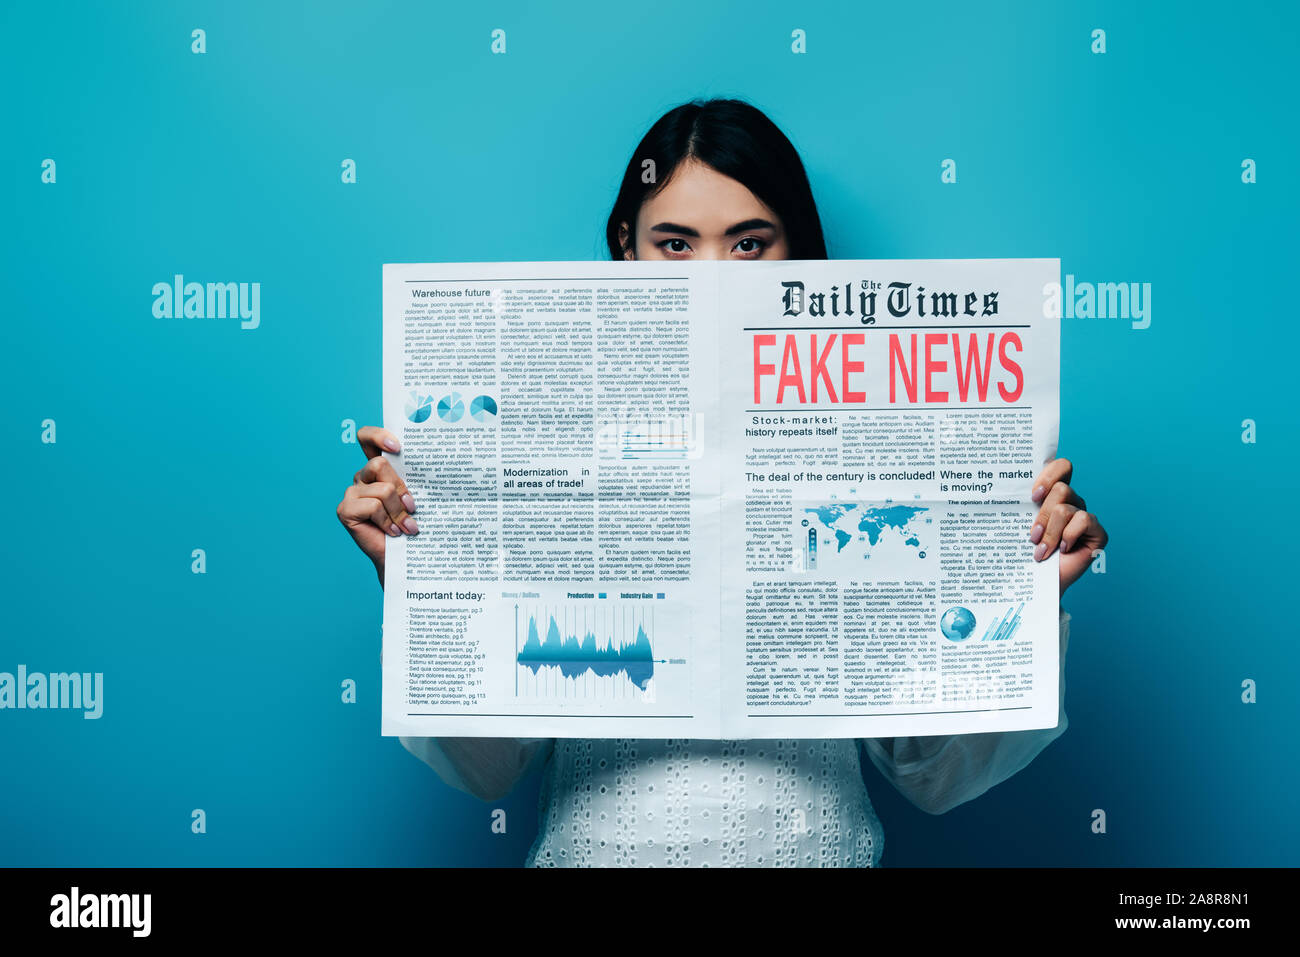 Femme asiatique en blouse blanche tenant un journal avec de fausses nouvelles sur fond bleu Banque D'Images